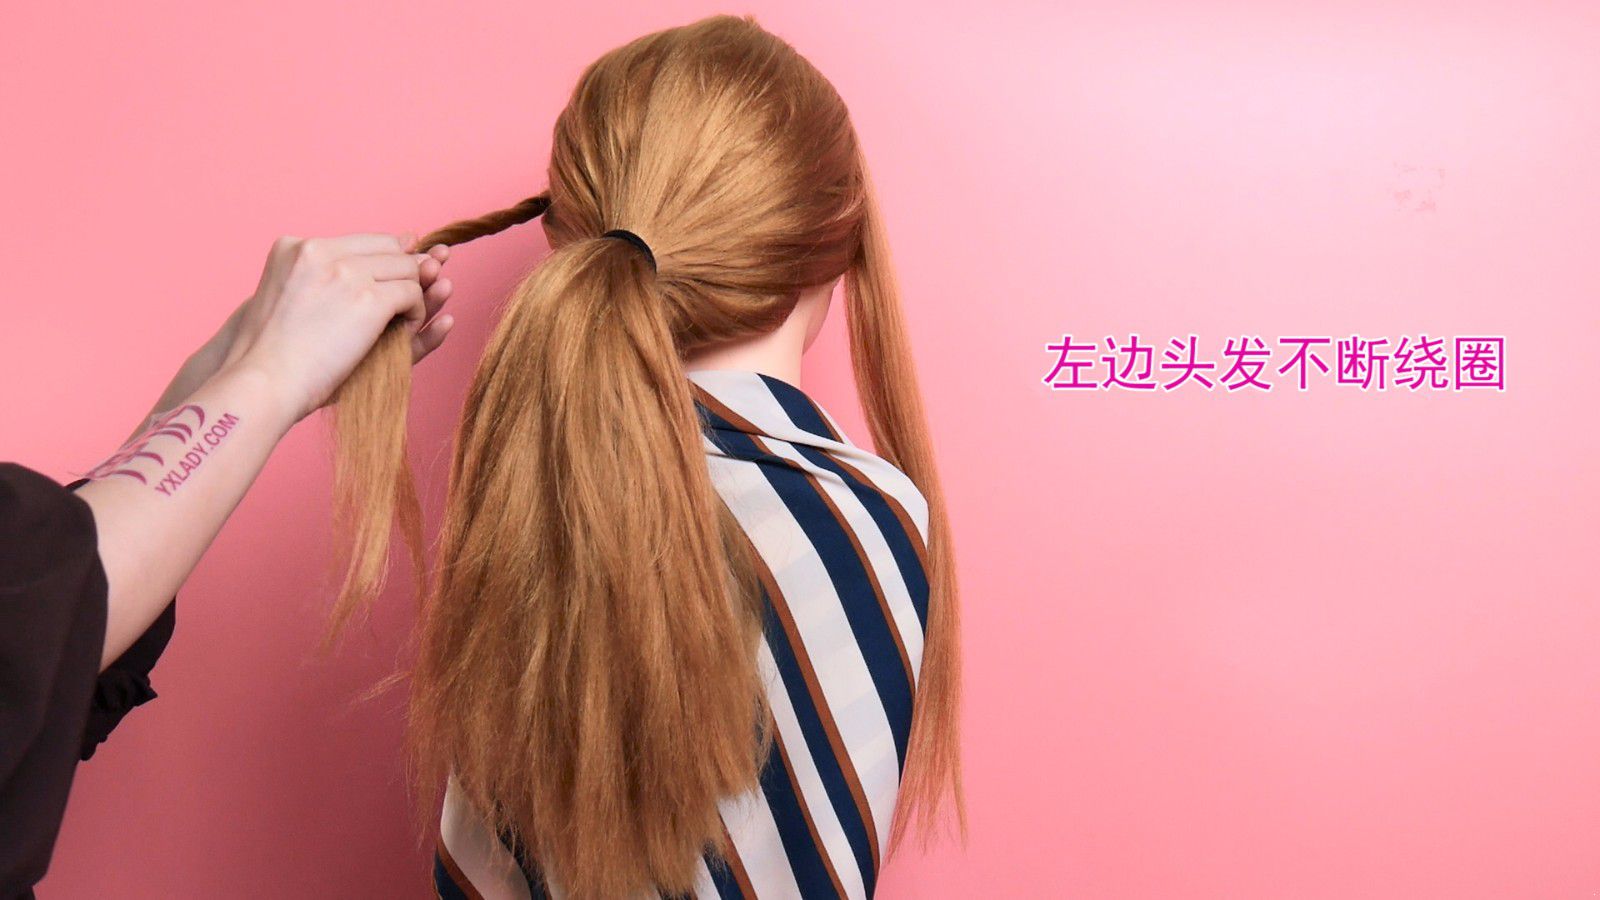 扎头发发型怎么扎 哪种简便又好看呢_伊秀视频|yxlady.com